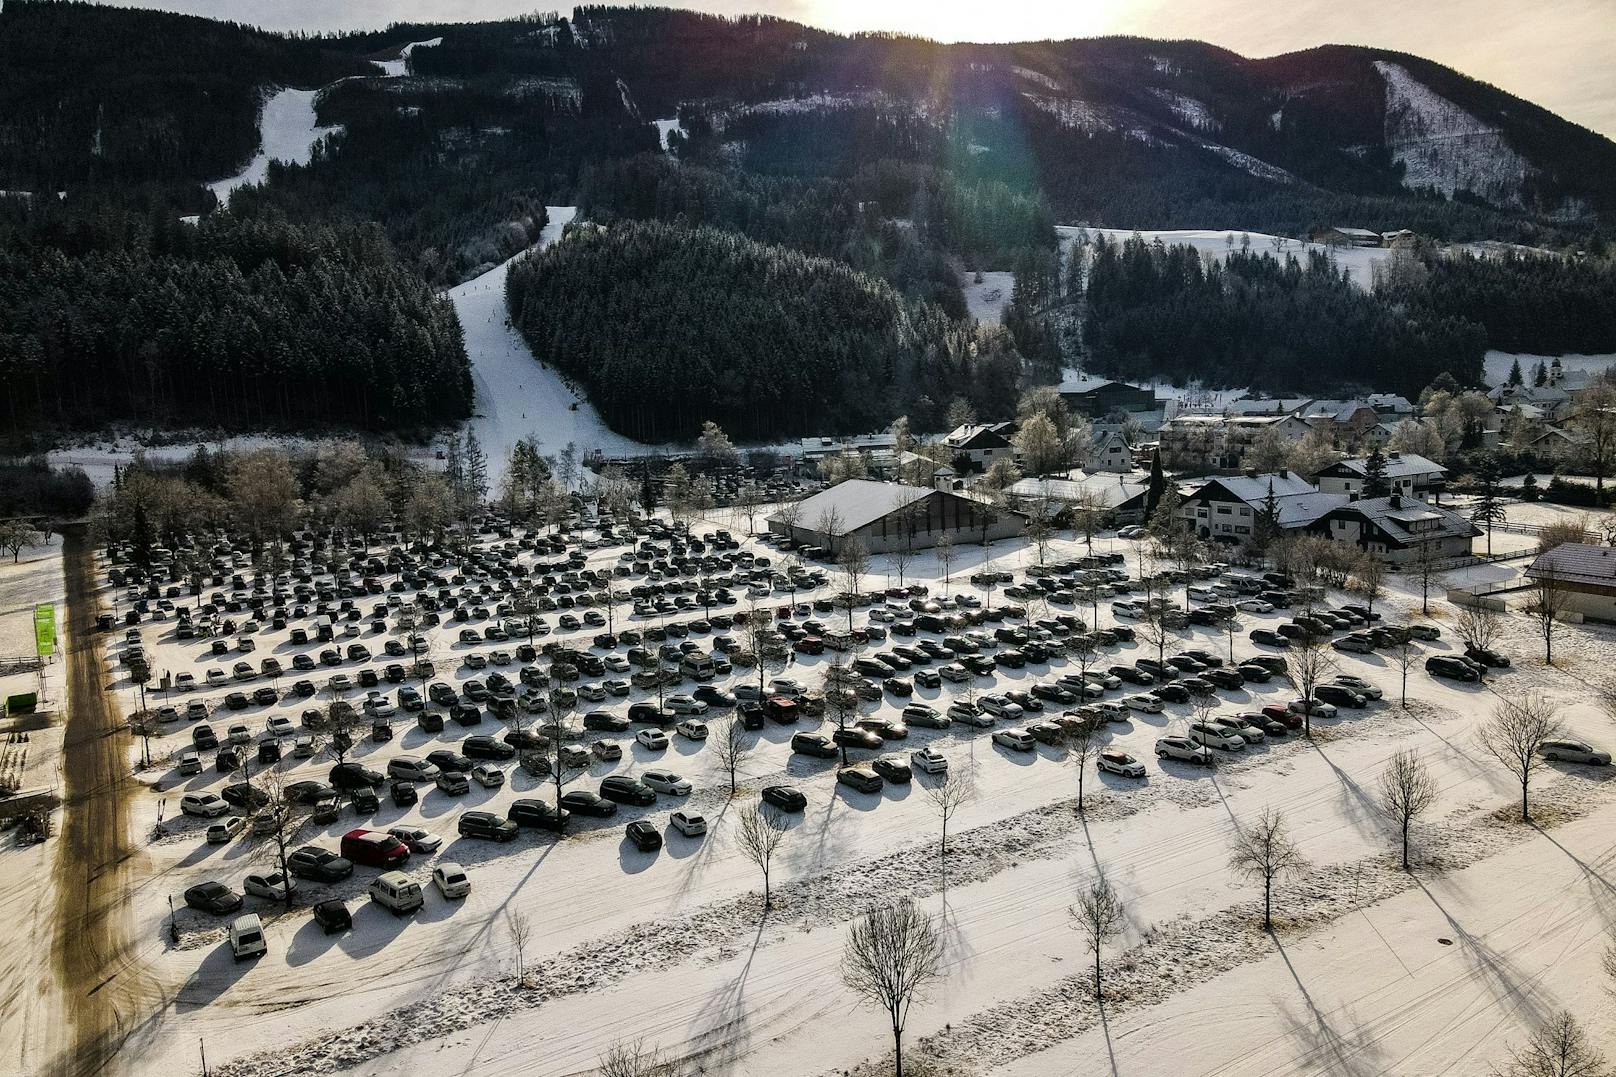 Während in den Städten alles zu ist, haben die Skigebiete offen. Diese Ungleichbehandlung kritisiert nun der Linzer Bürgermeister Klaus Luger.